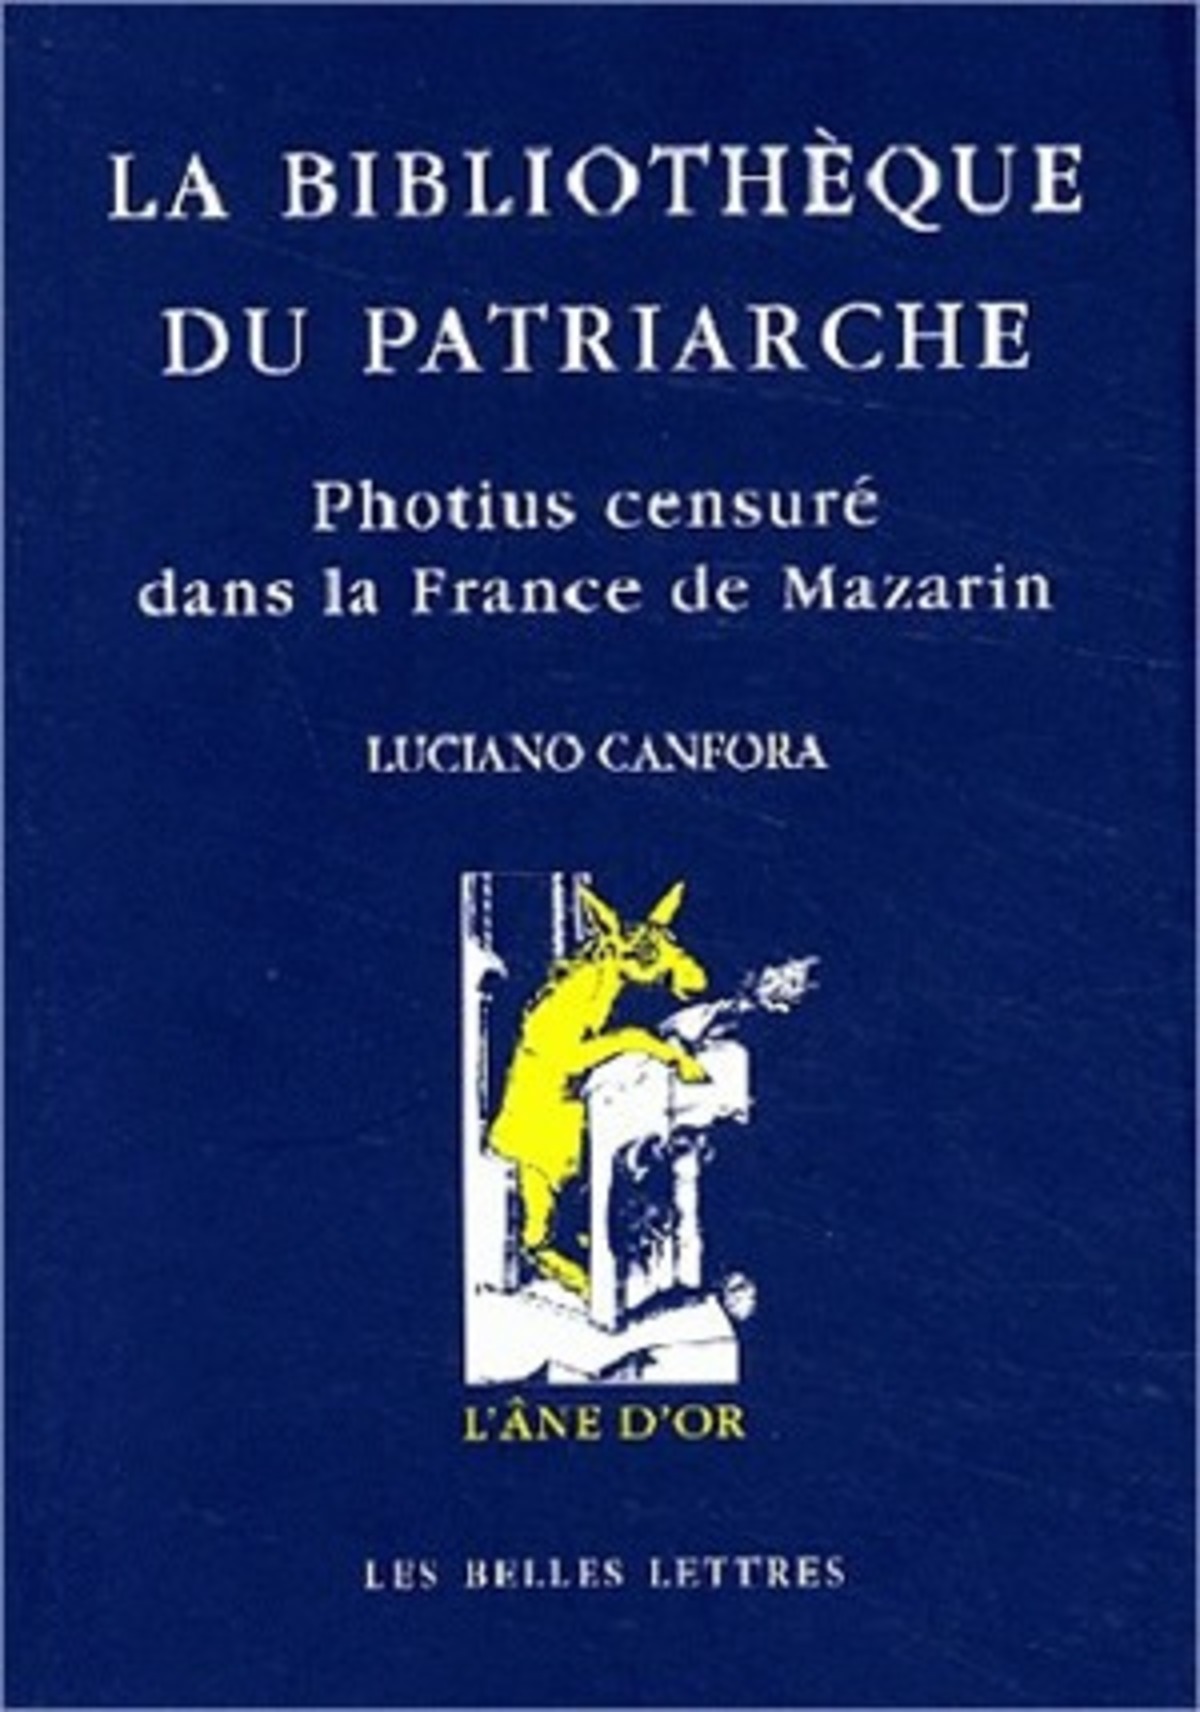 La Bibliothèque du patriarche